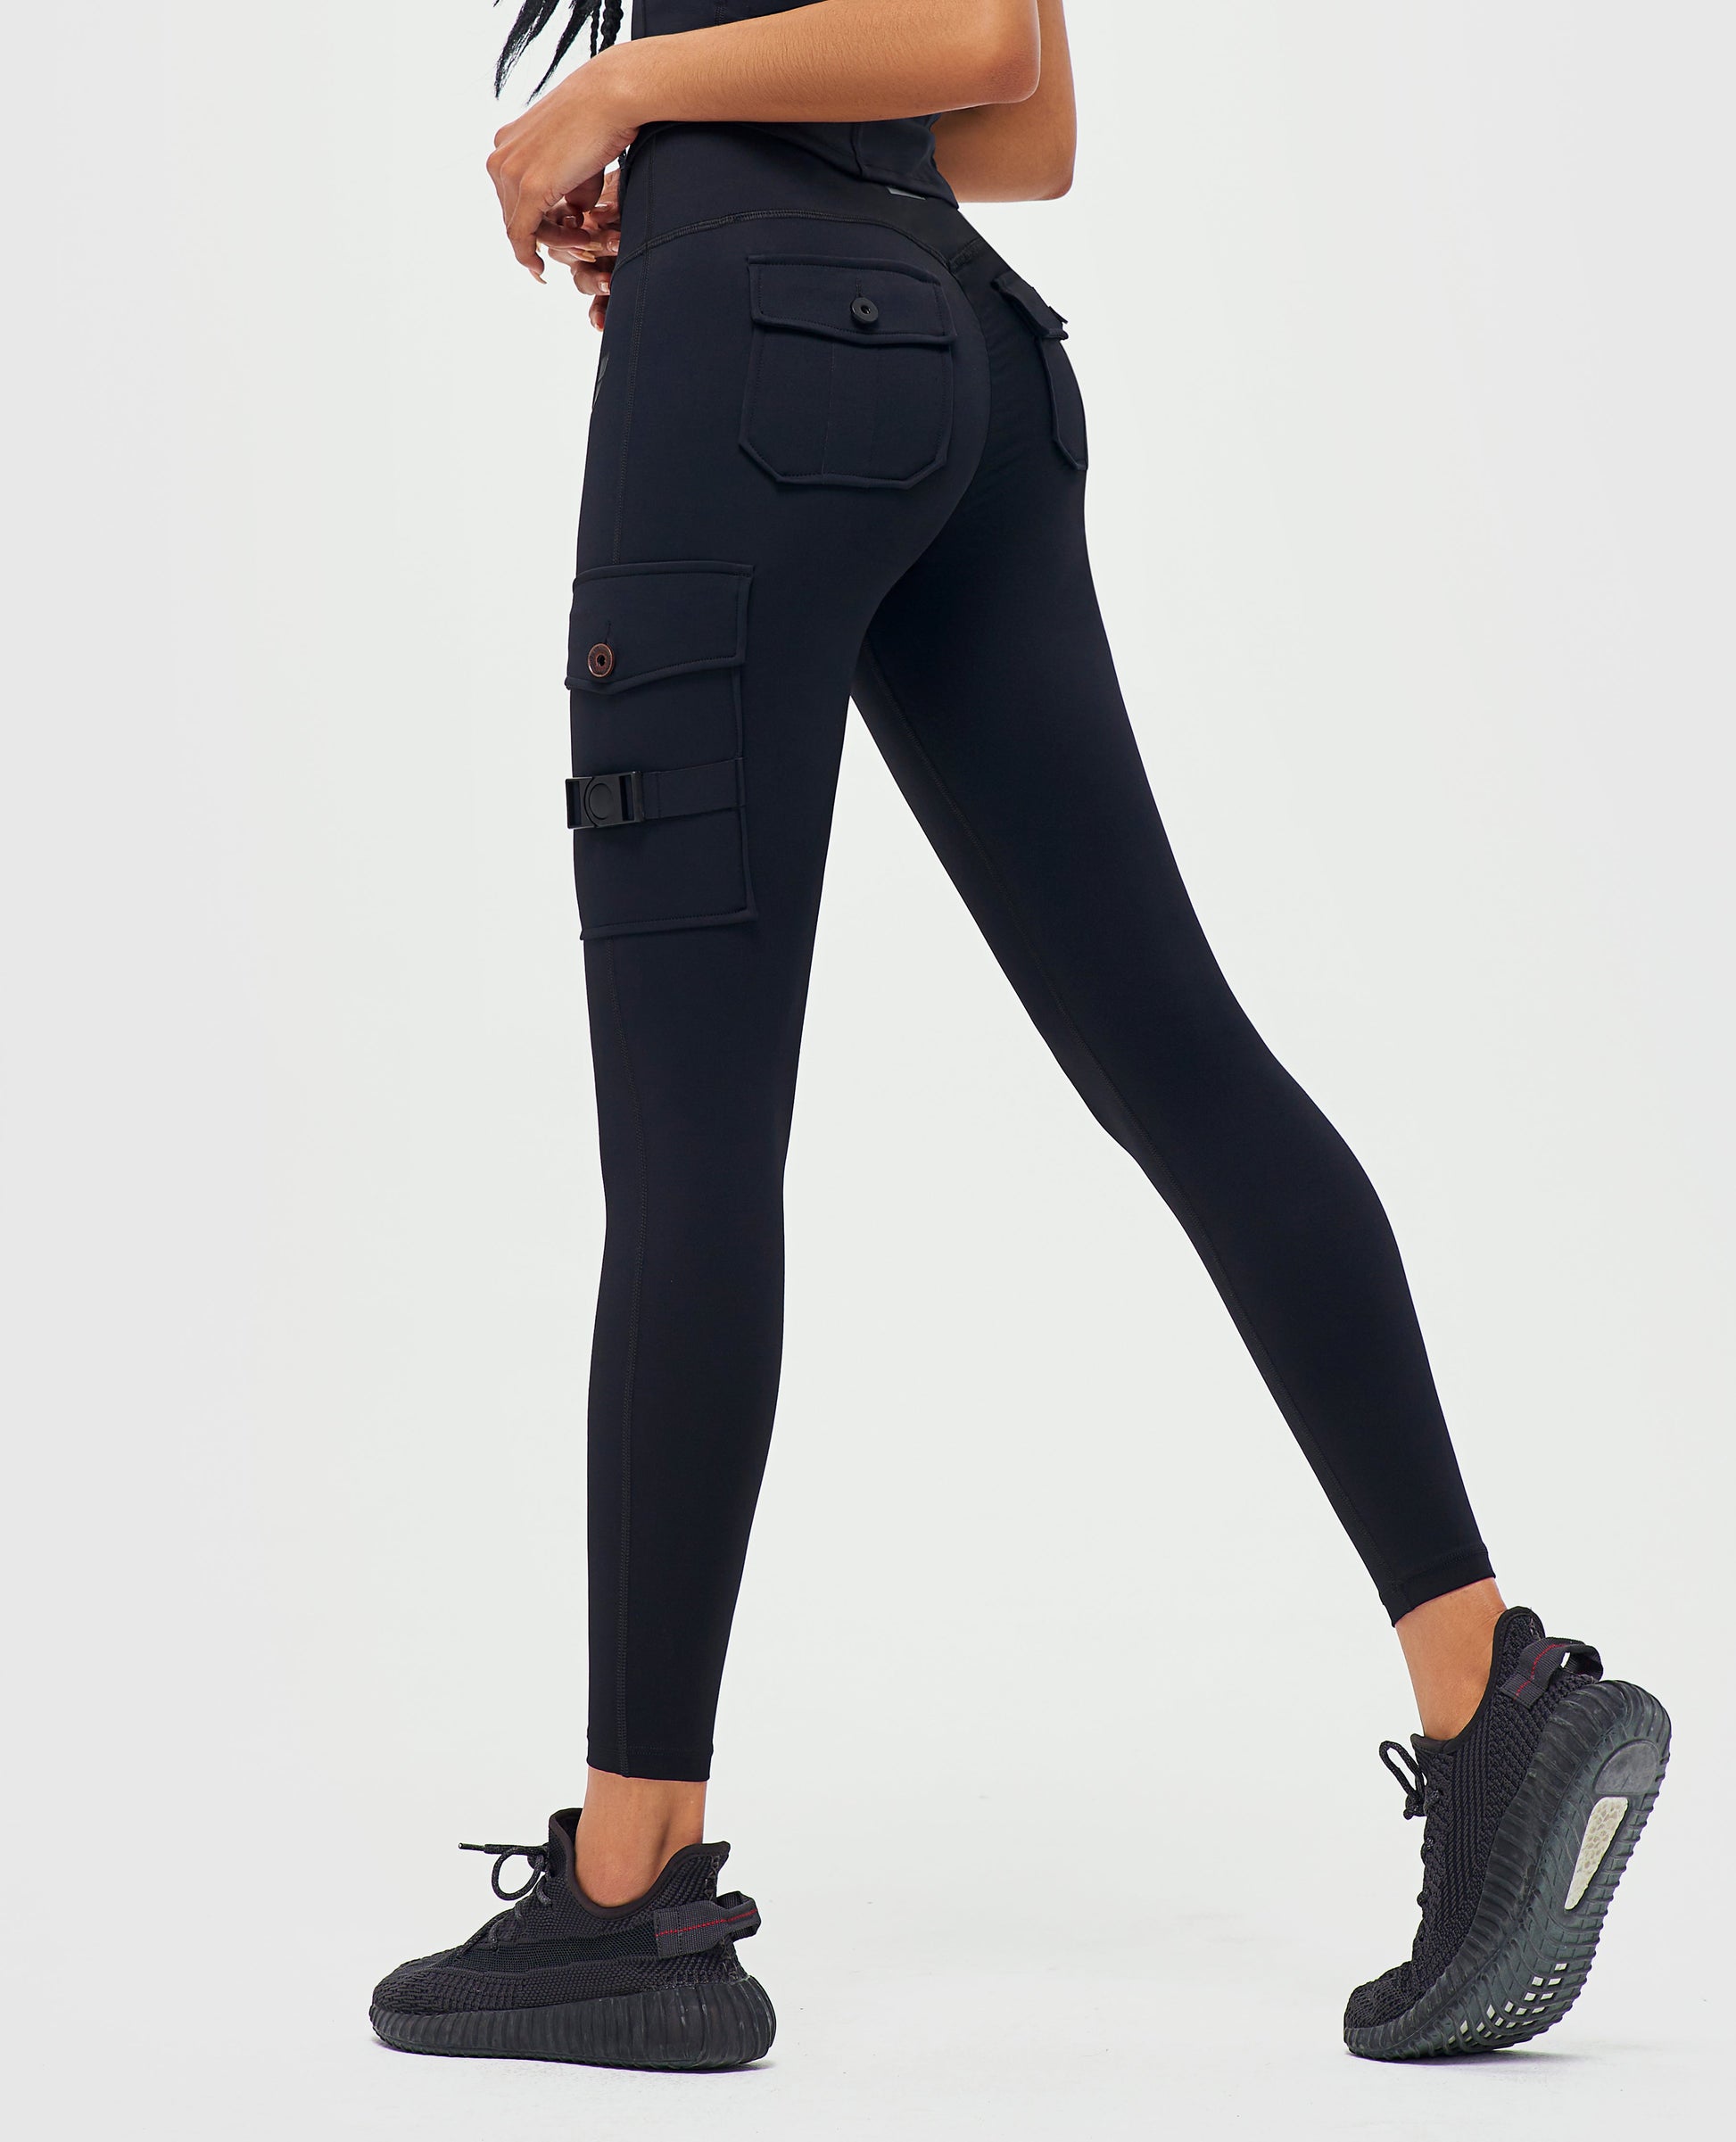 Grossiste Pantalon Leggings Femme Noir - 3608